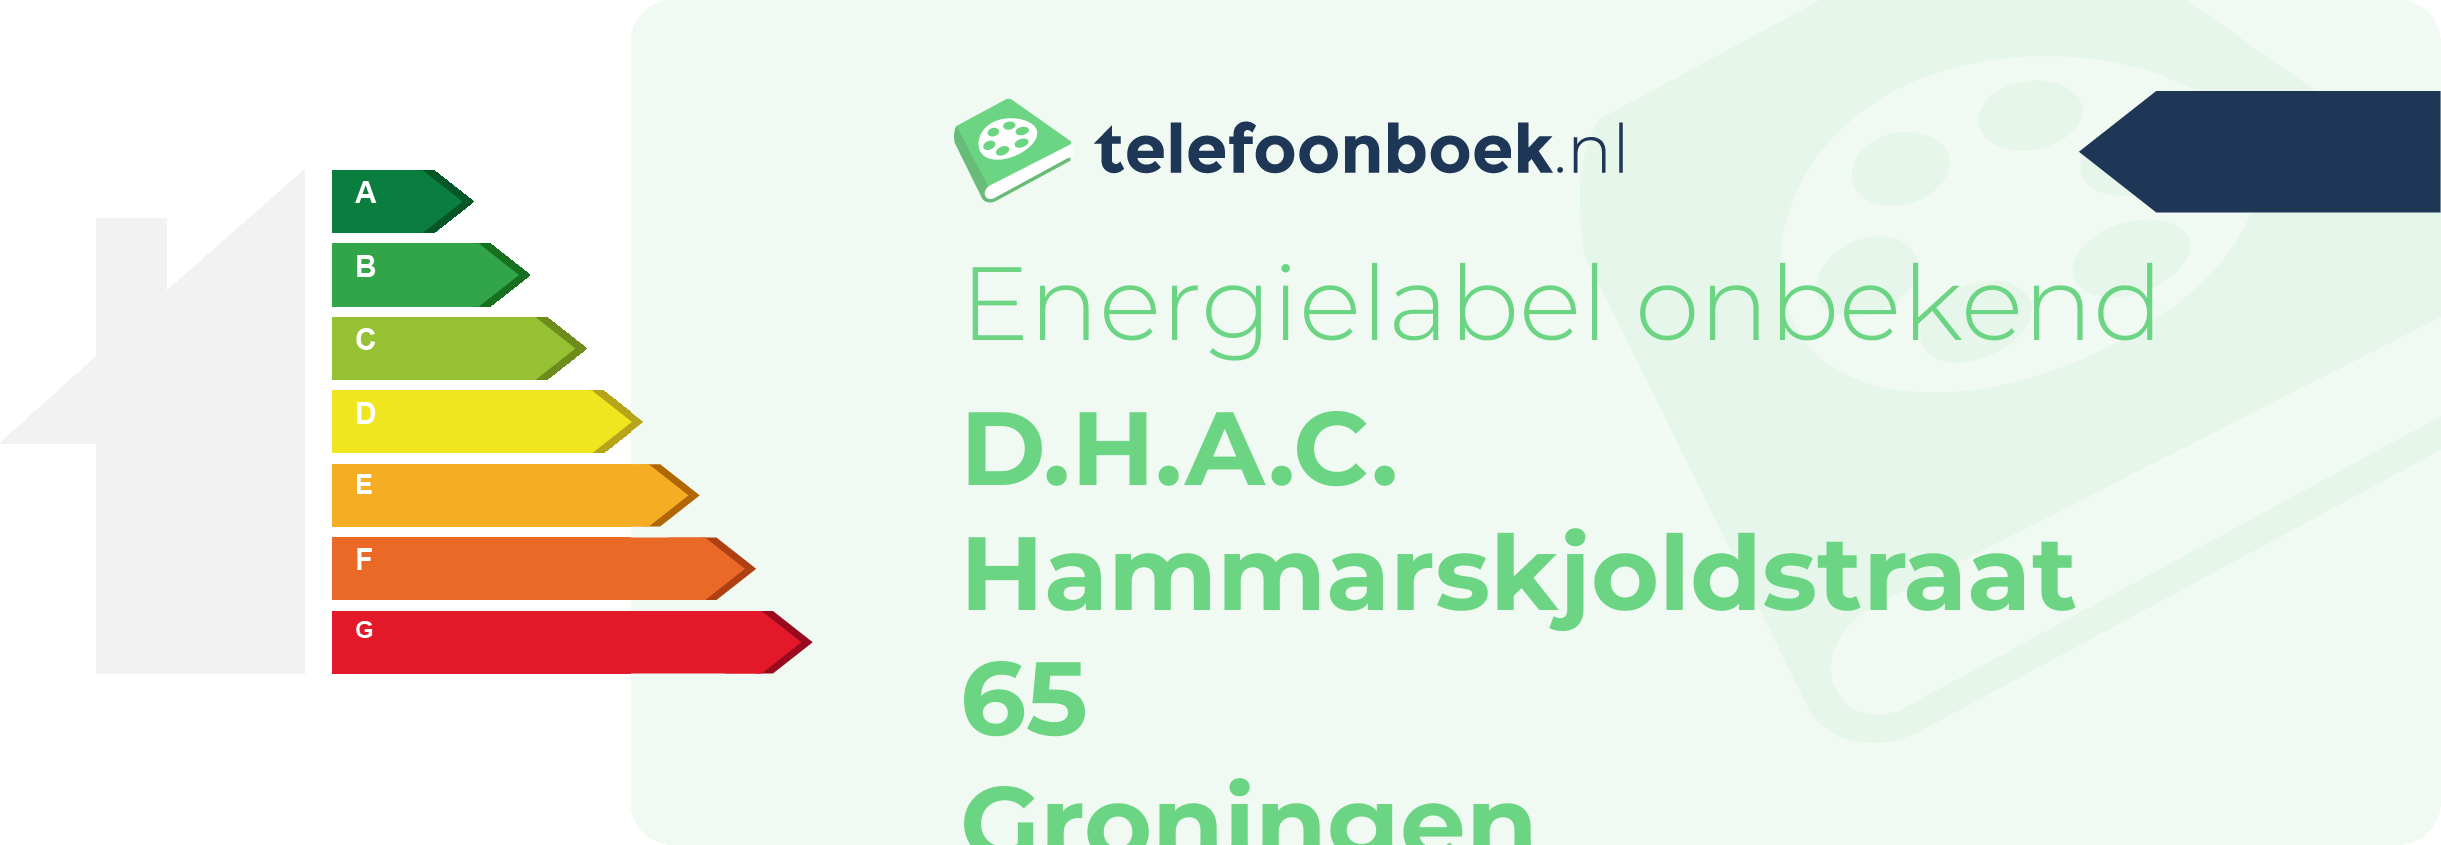 Energielabel D.H.A.C. Hammarskjoldstraat 65 Groningen